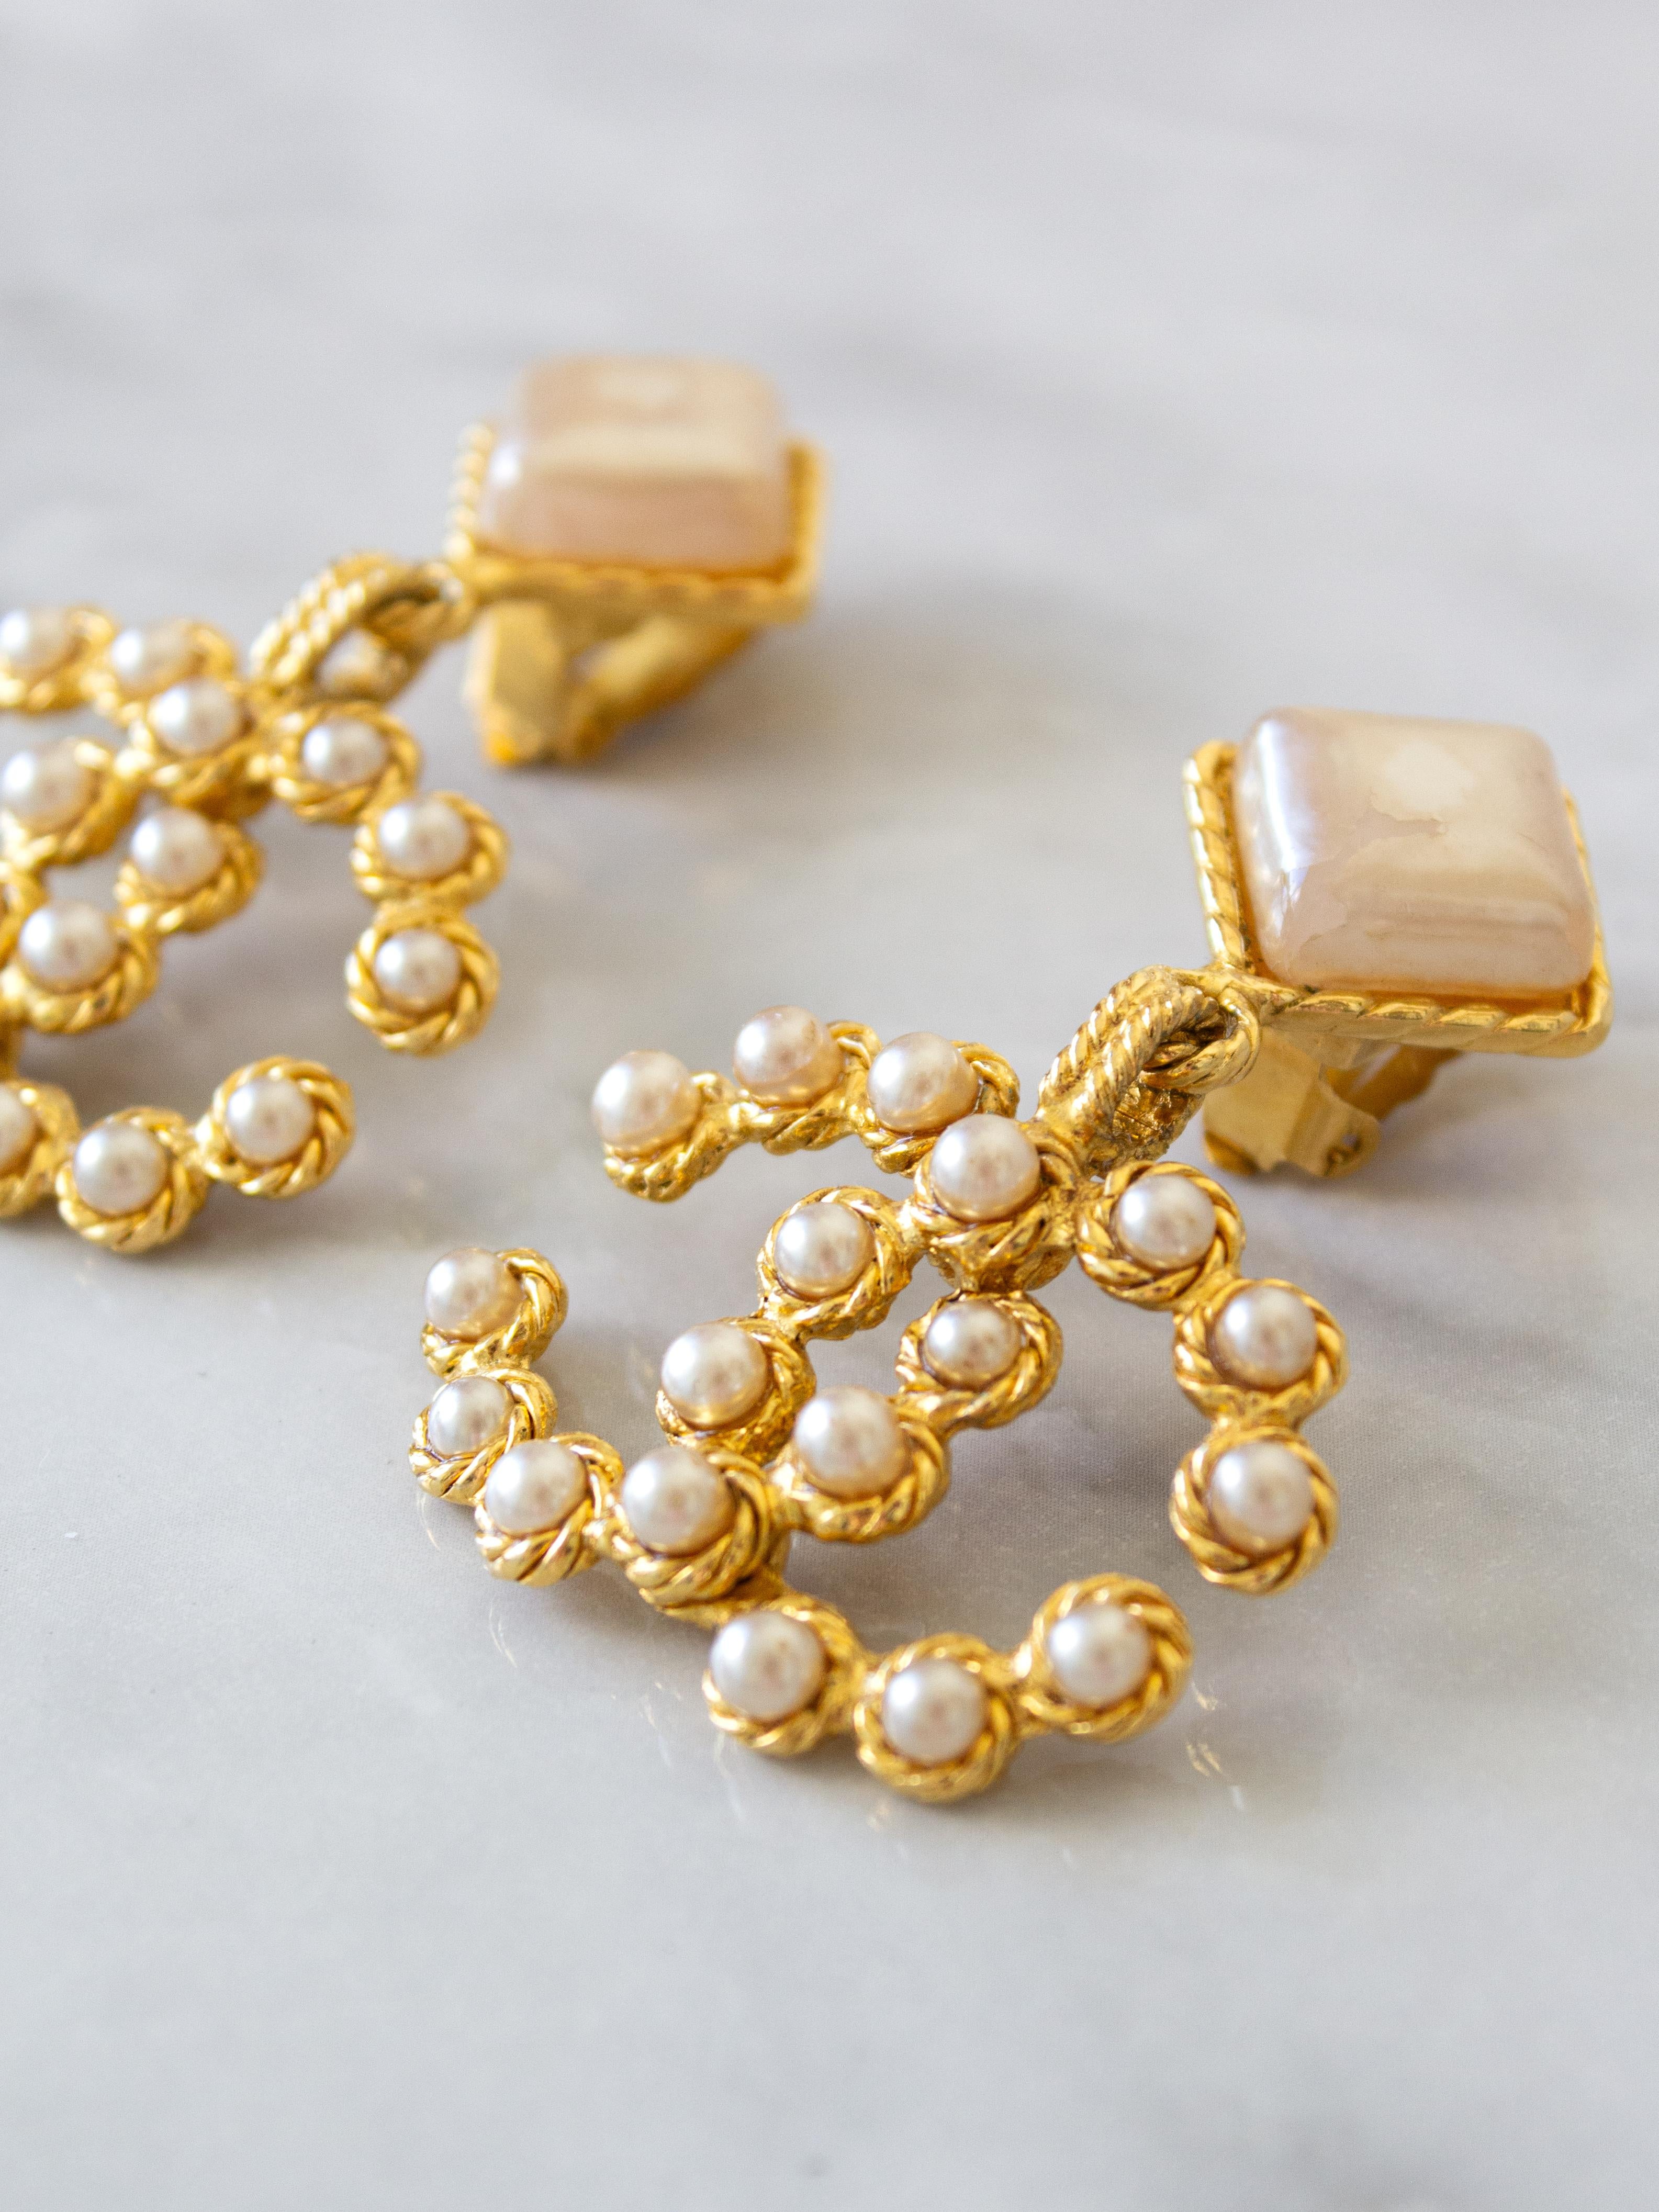 Entdecken Sie ein Stück Modegeschichte mit diesen Vintage-Ohrringen aus Chanel-Perlenimitat. Diese Ohrringe aus der Spring/Summer 1992 Collection sind mehr als nur Accessoires - sie sind Sammlerstücke. Mit dem kultigen CC